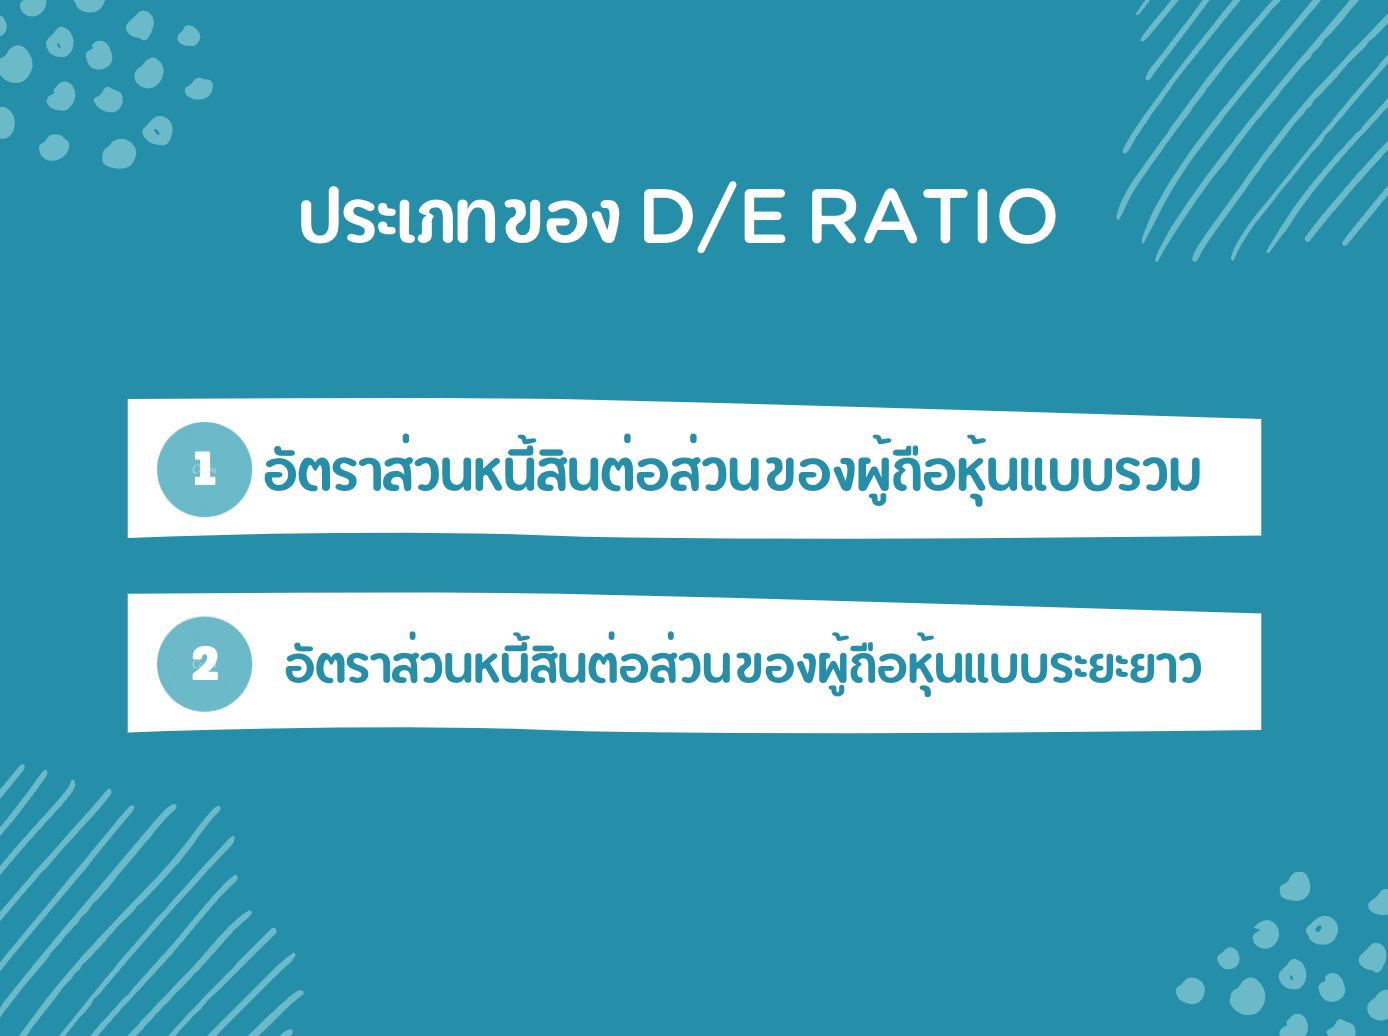 ประเภทของ D/E Ratio